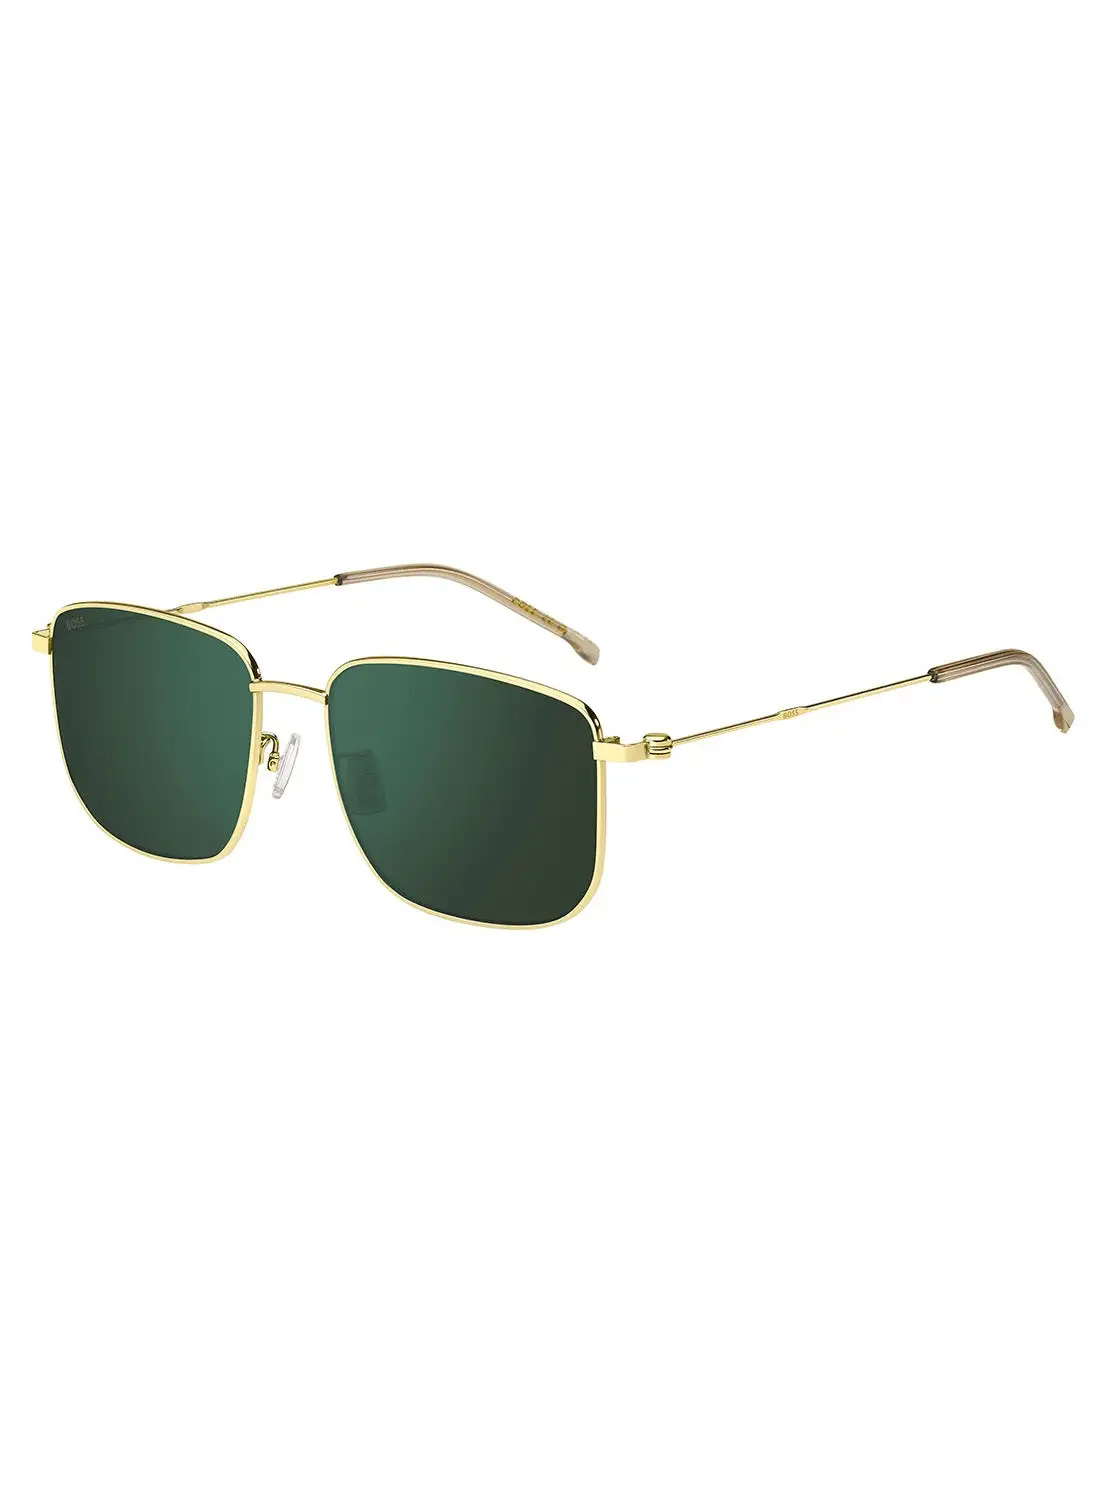 HUGO BOSS Men's UV Protection Rectangular Sunglasses - Boss 1619/F/S Gold Millimeter - Lens Size: 58 Mm